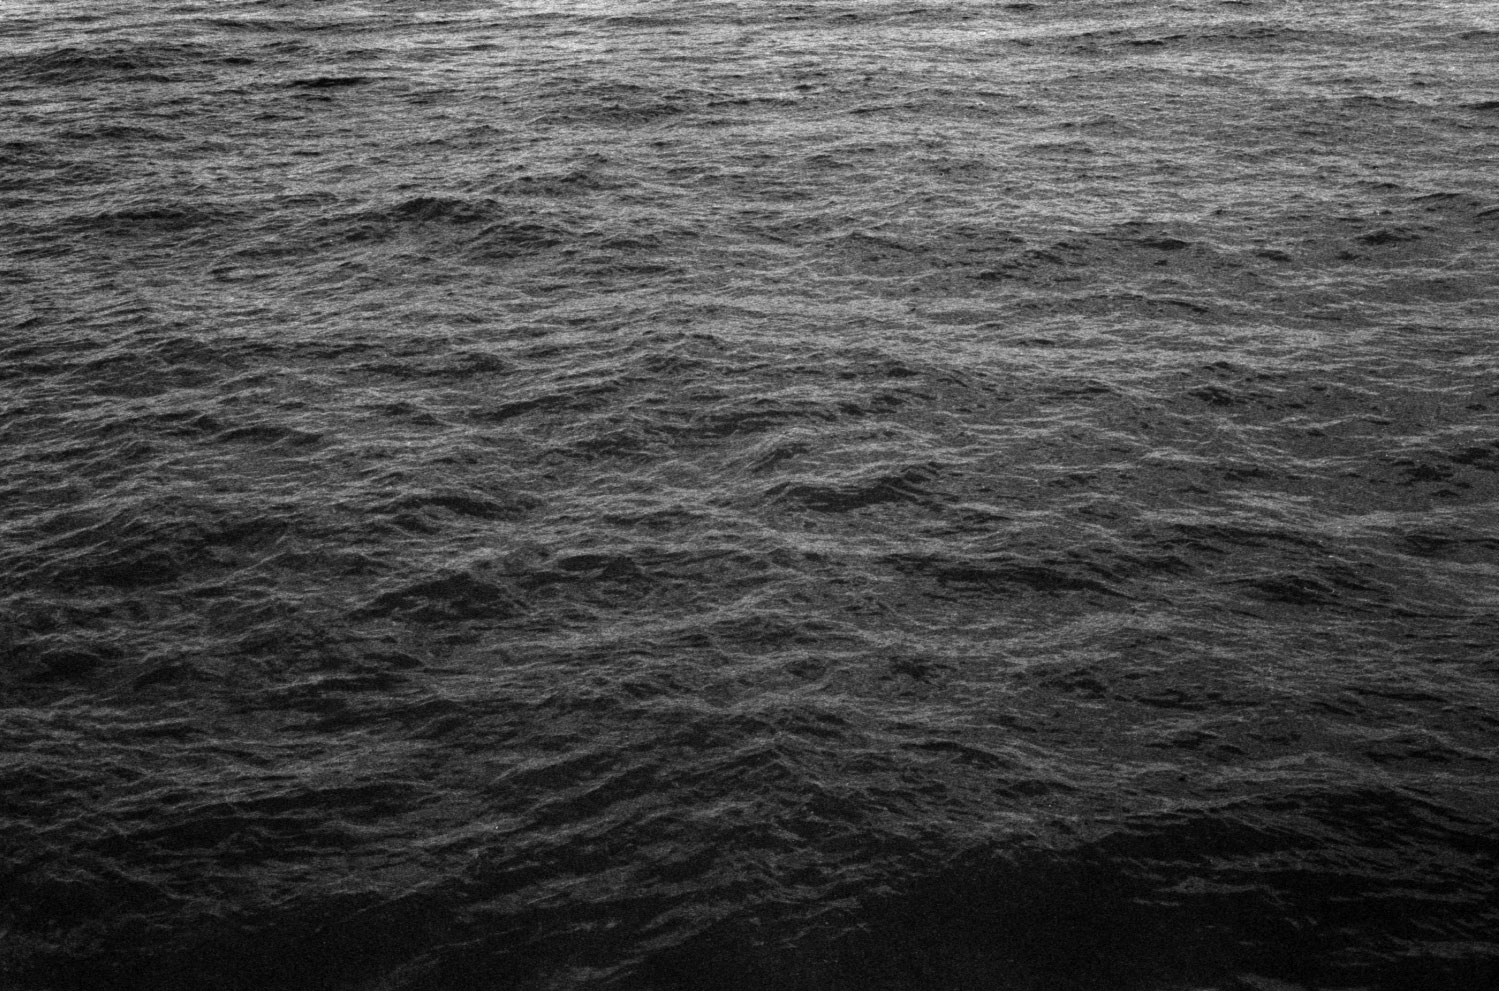 Ocean-36.79.2010.jpg